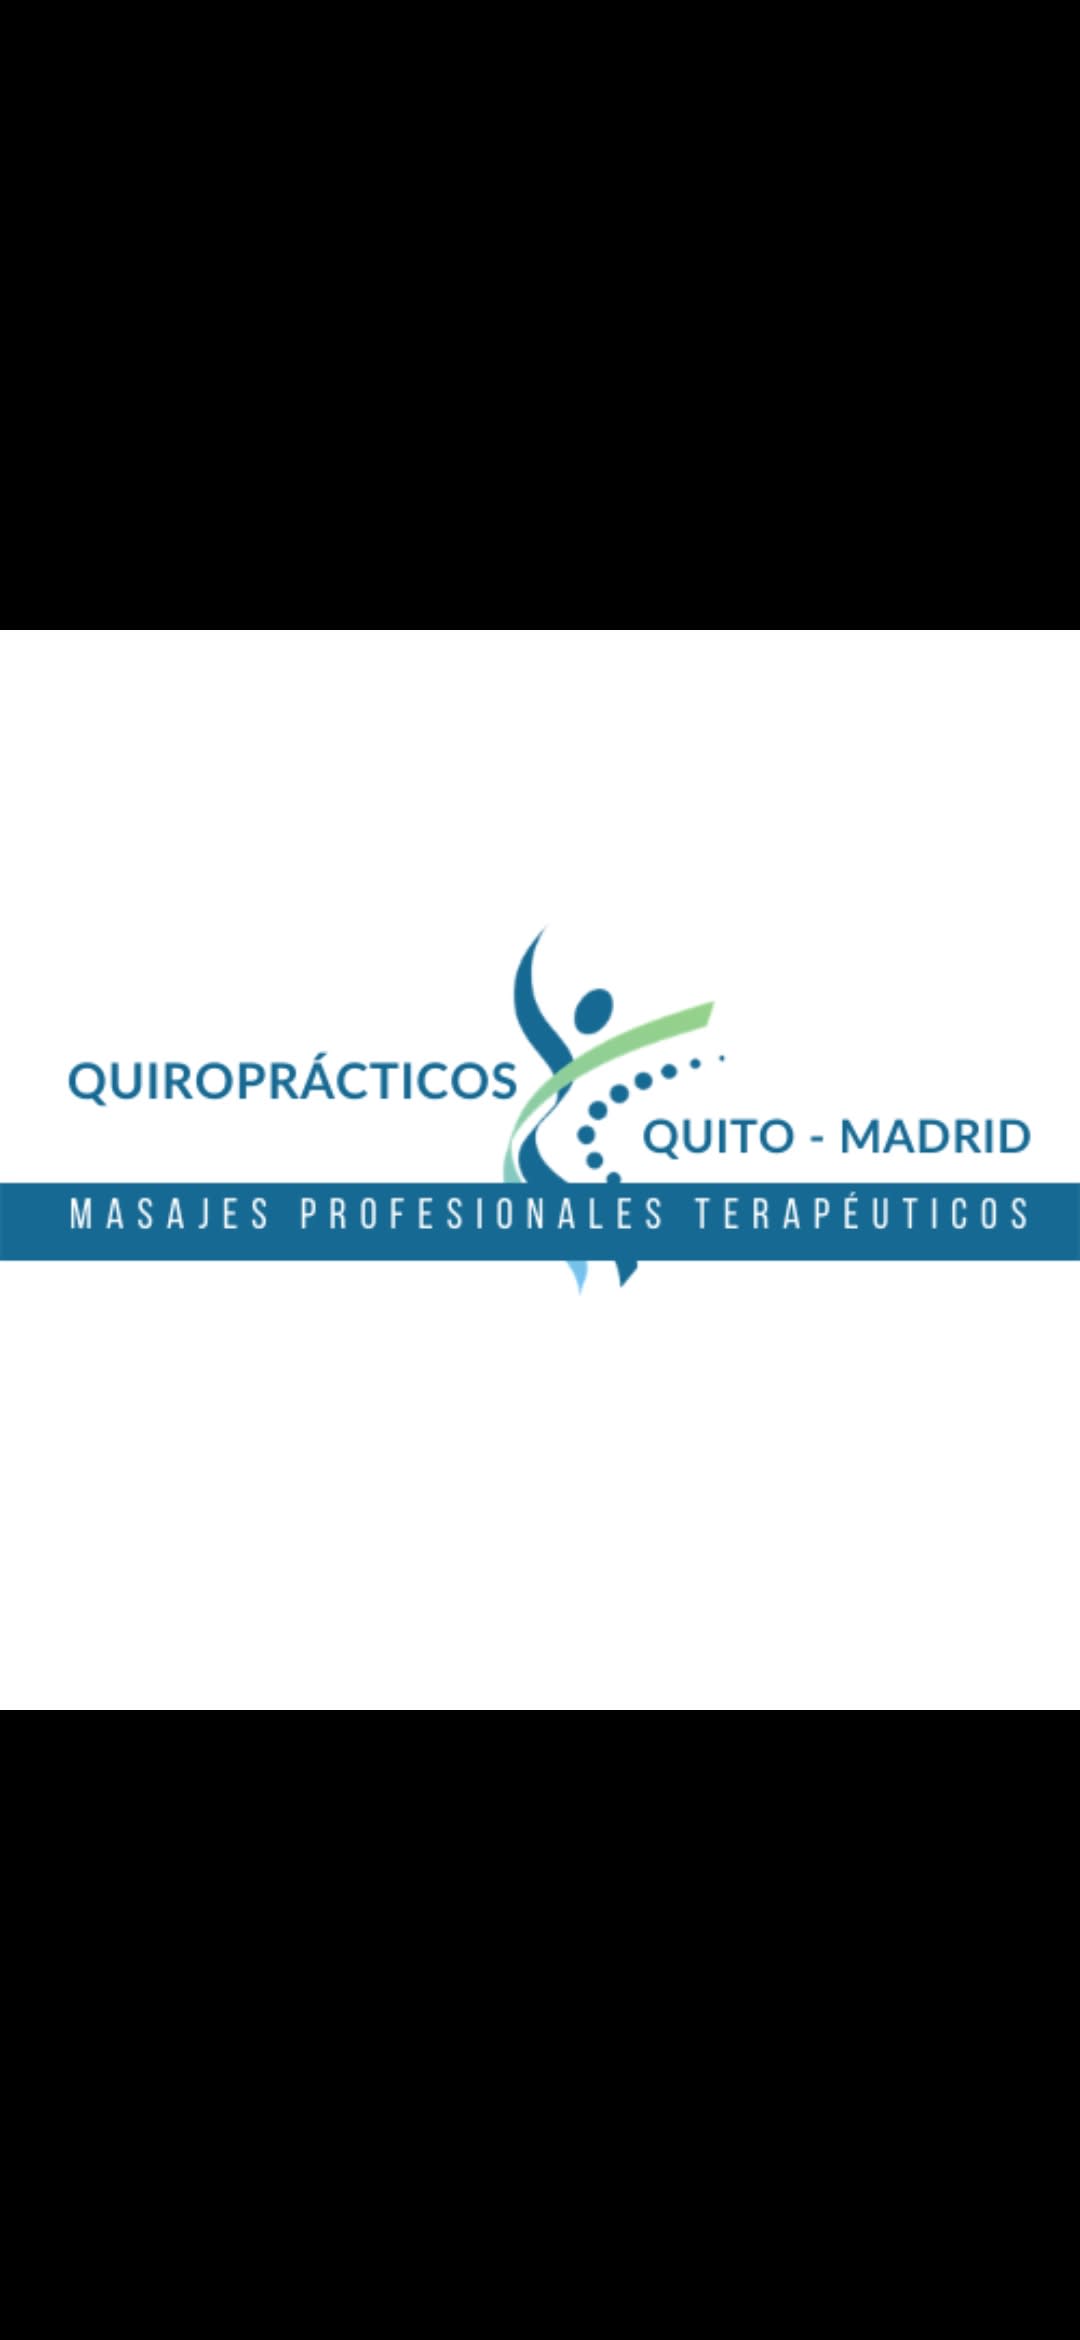 Quiropracticos Quito-Madrid